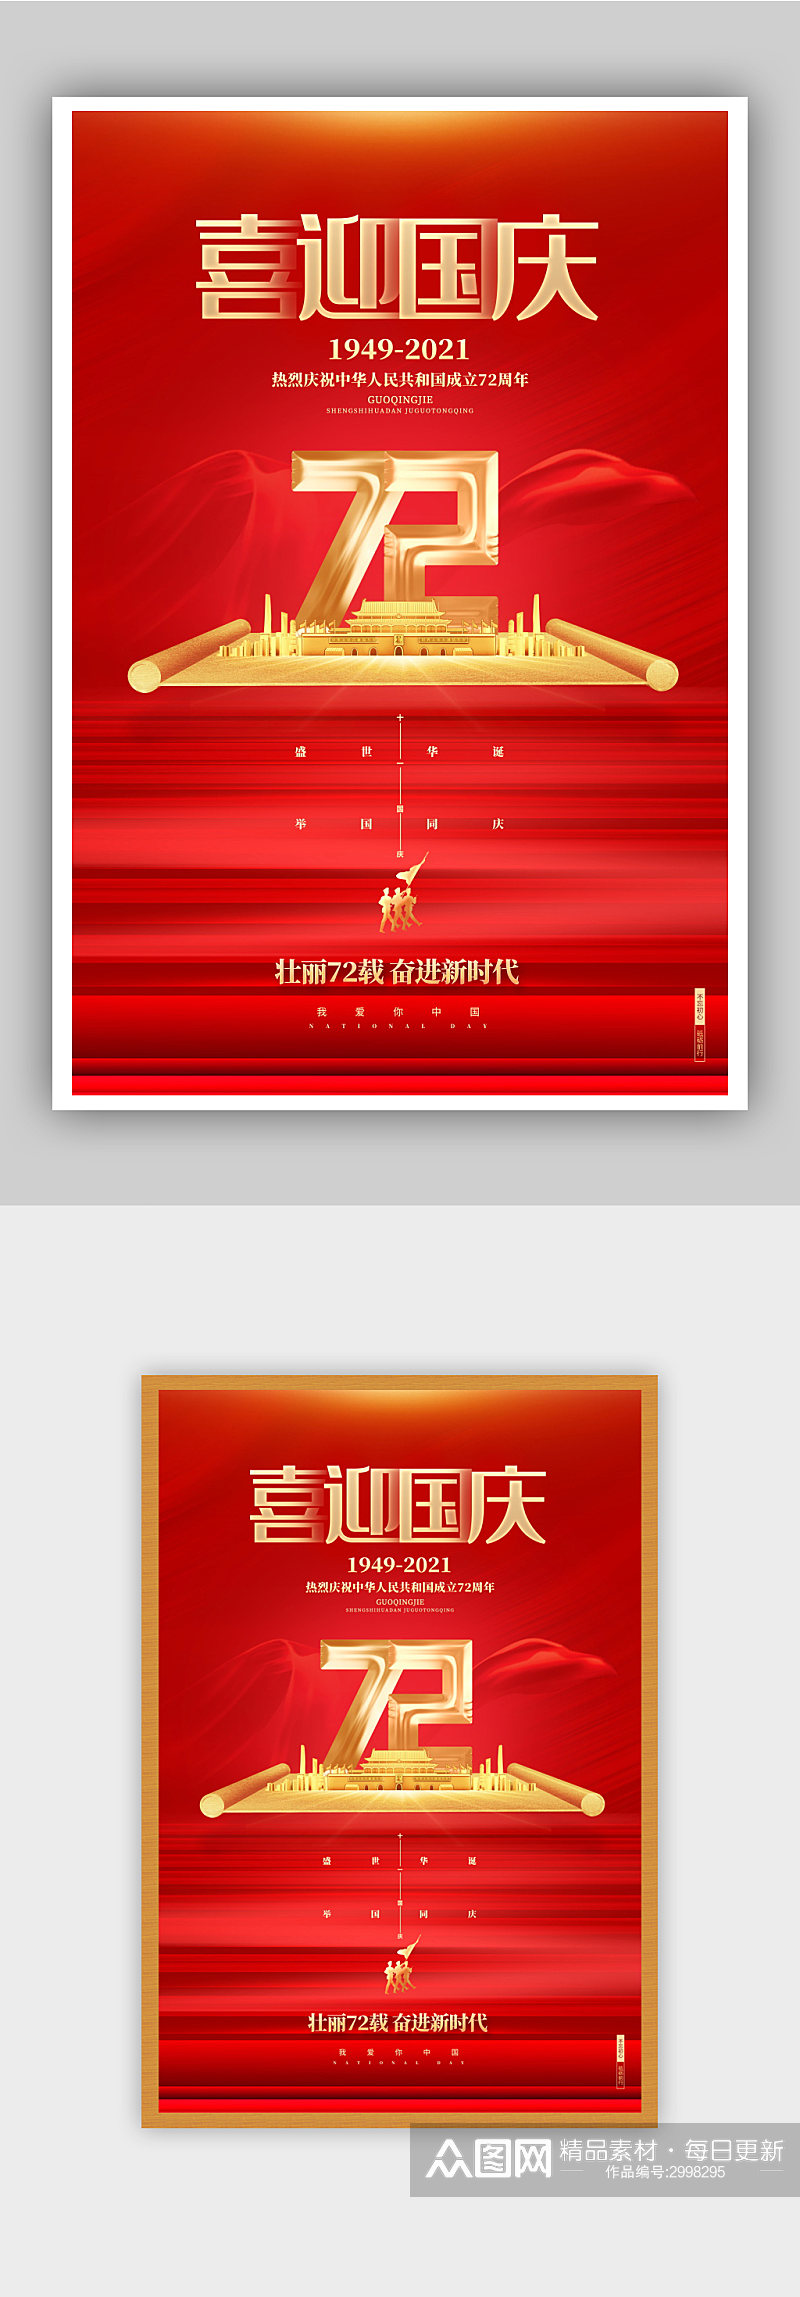 红色高端喜迎国庆建国72周年国庆节海报素材